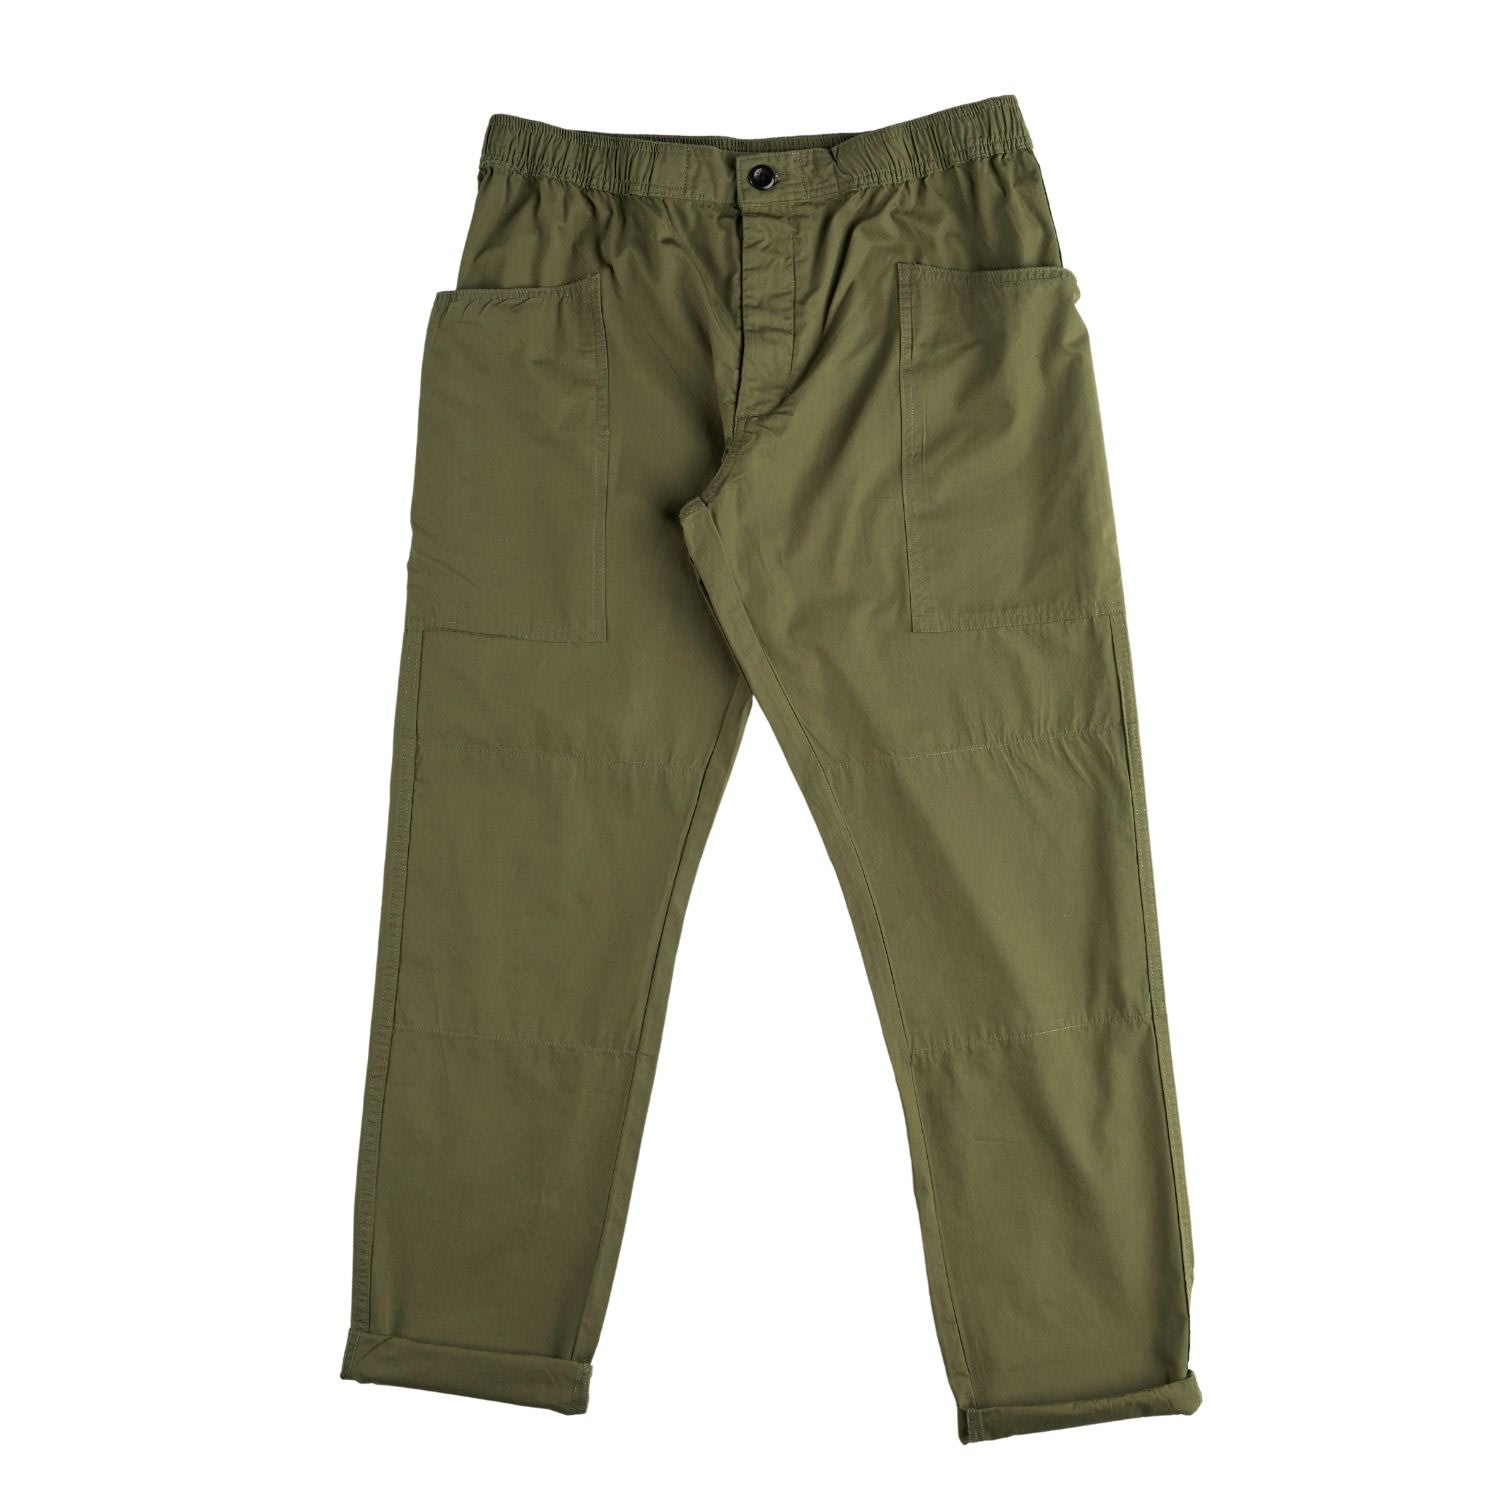 Uskees Men's Green 5011 Lightweight Pants - Olive